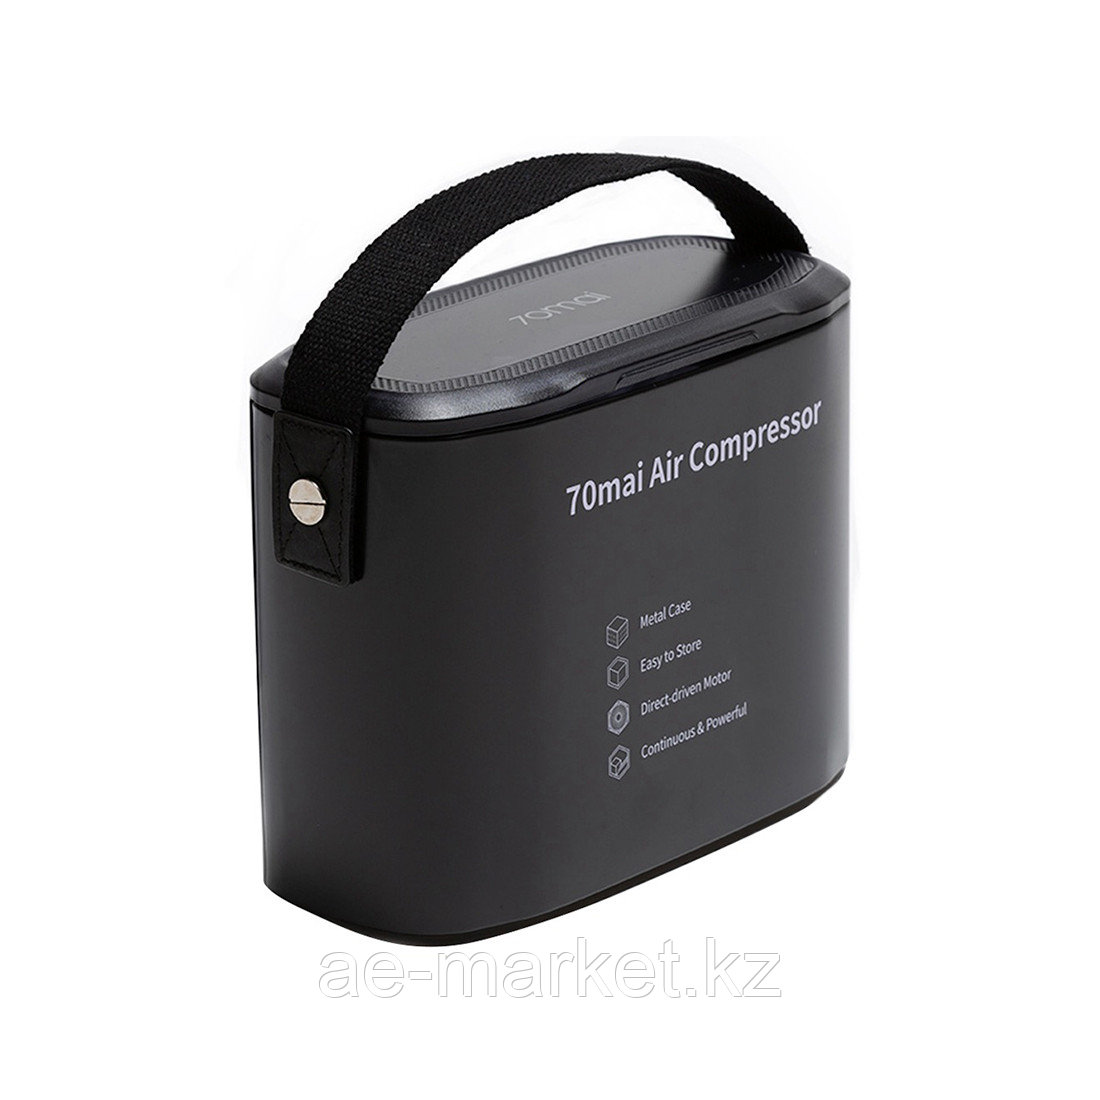 Автомобильный компрессор 70Mai Midrive TP01 Черный, фото 1